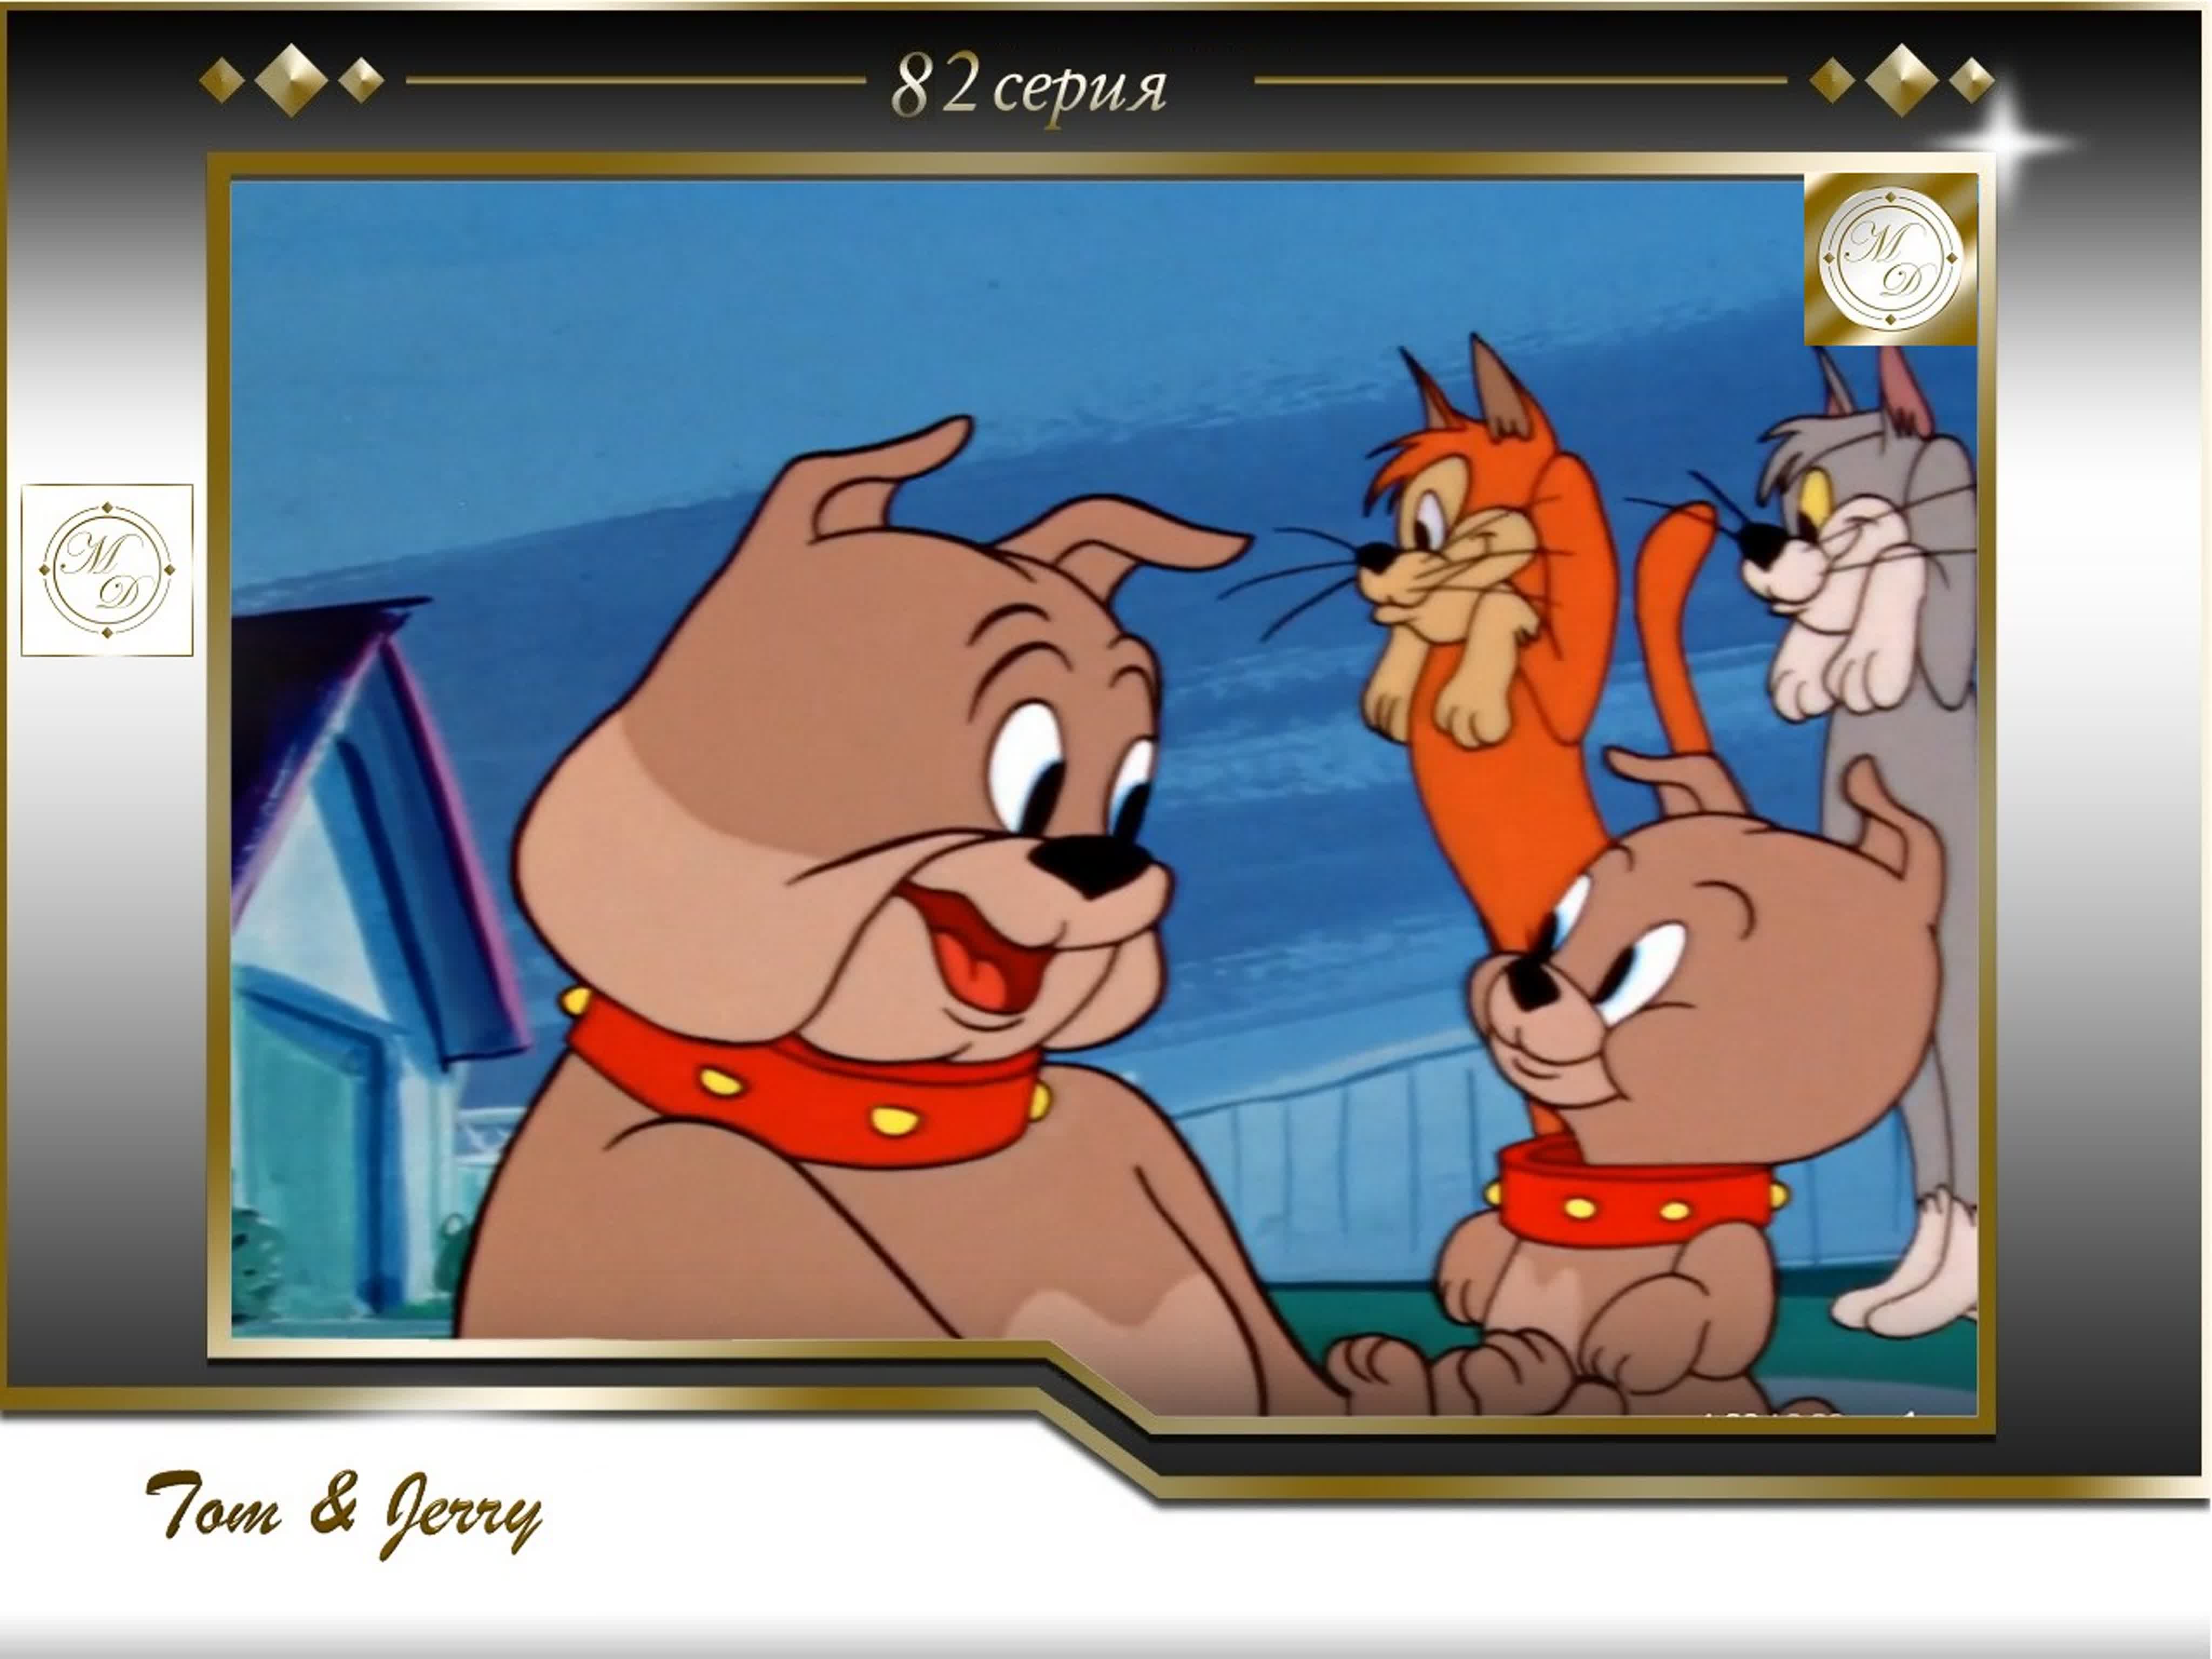 Tom & Jerry (USA 1940-1967  Metro-Goldwyn-Mayer)